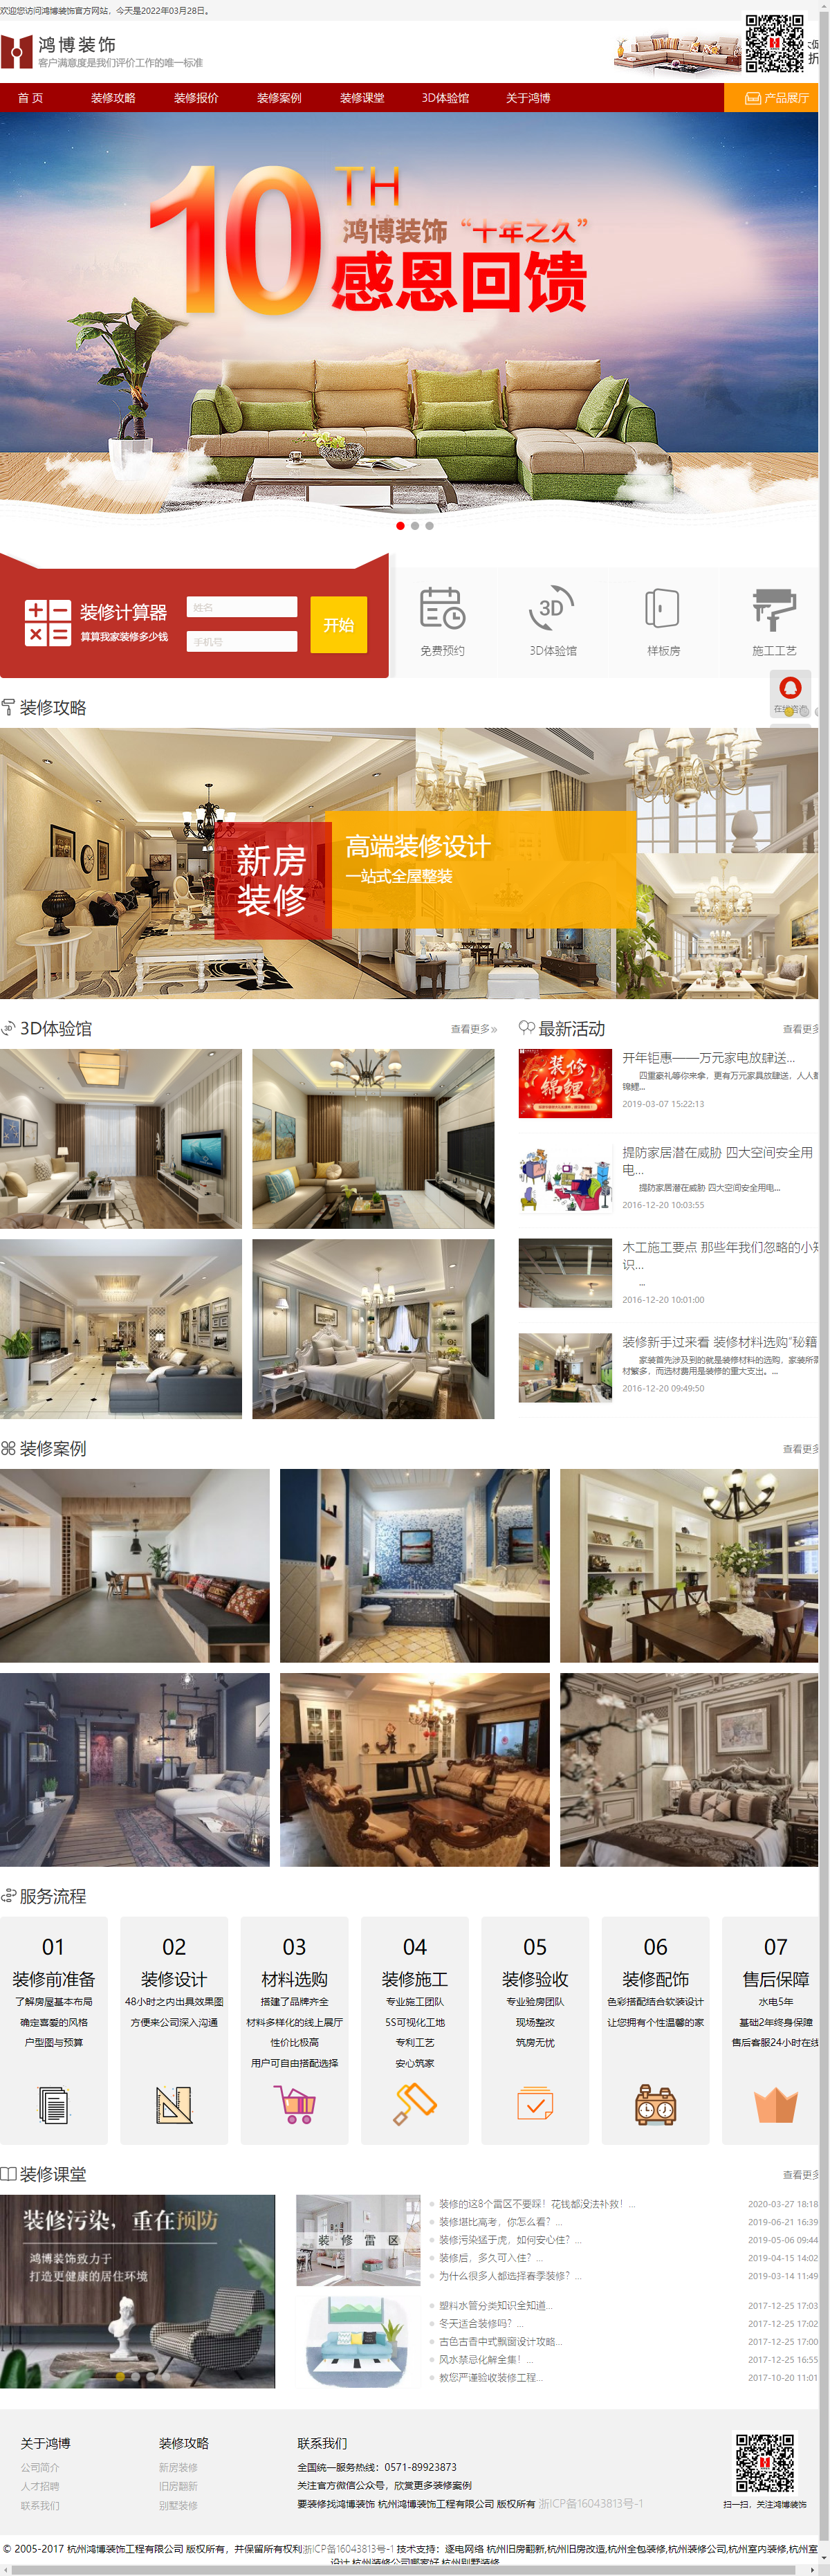 杭州鸿博装饰设计工程有限公司网站案例